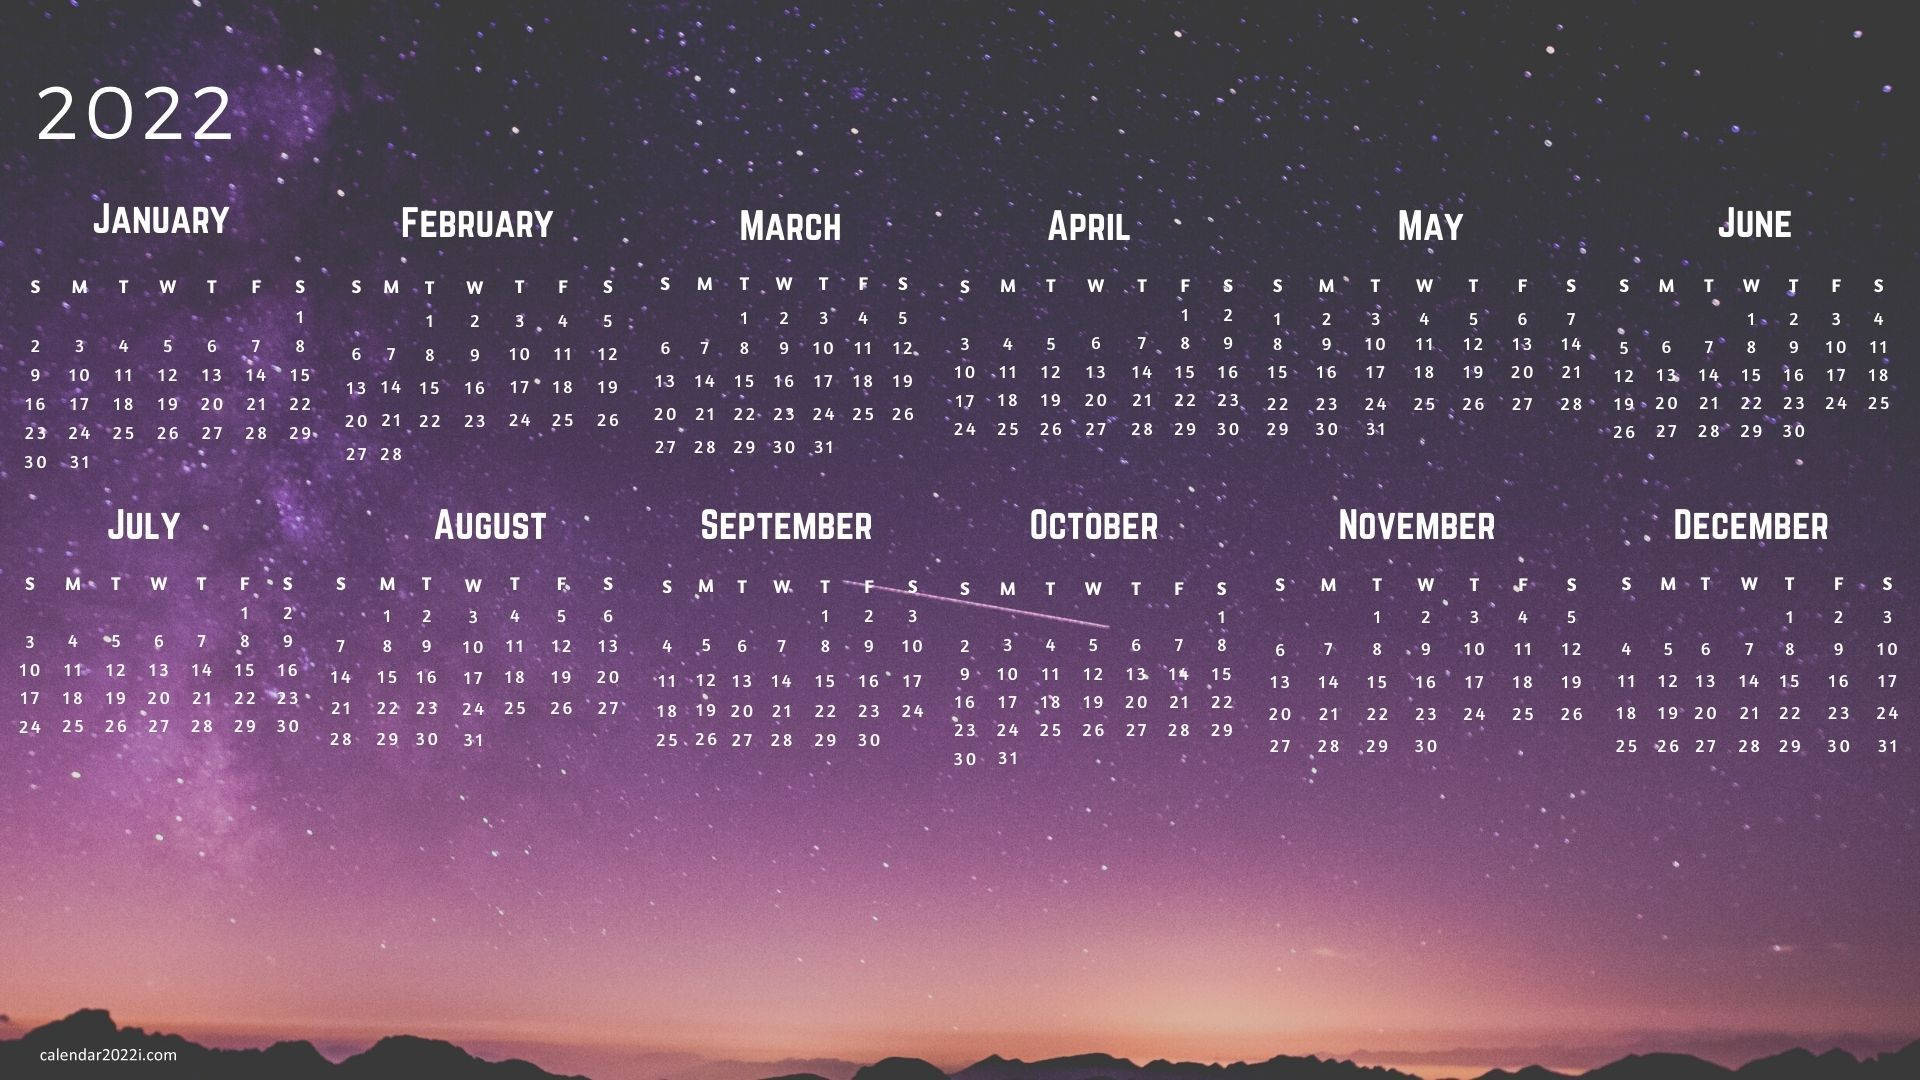 Bright and Vibrant May 2022 Wall Calendar Wallpaper